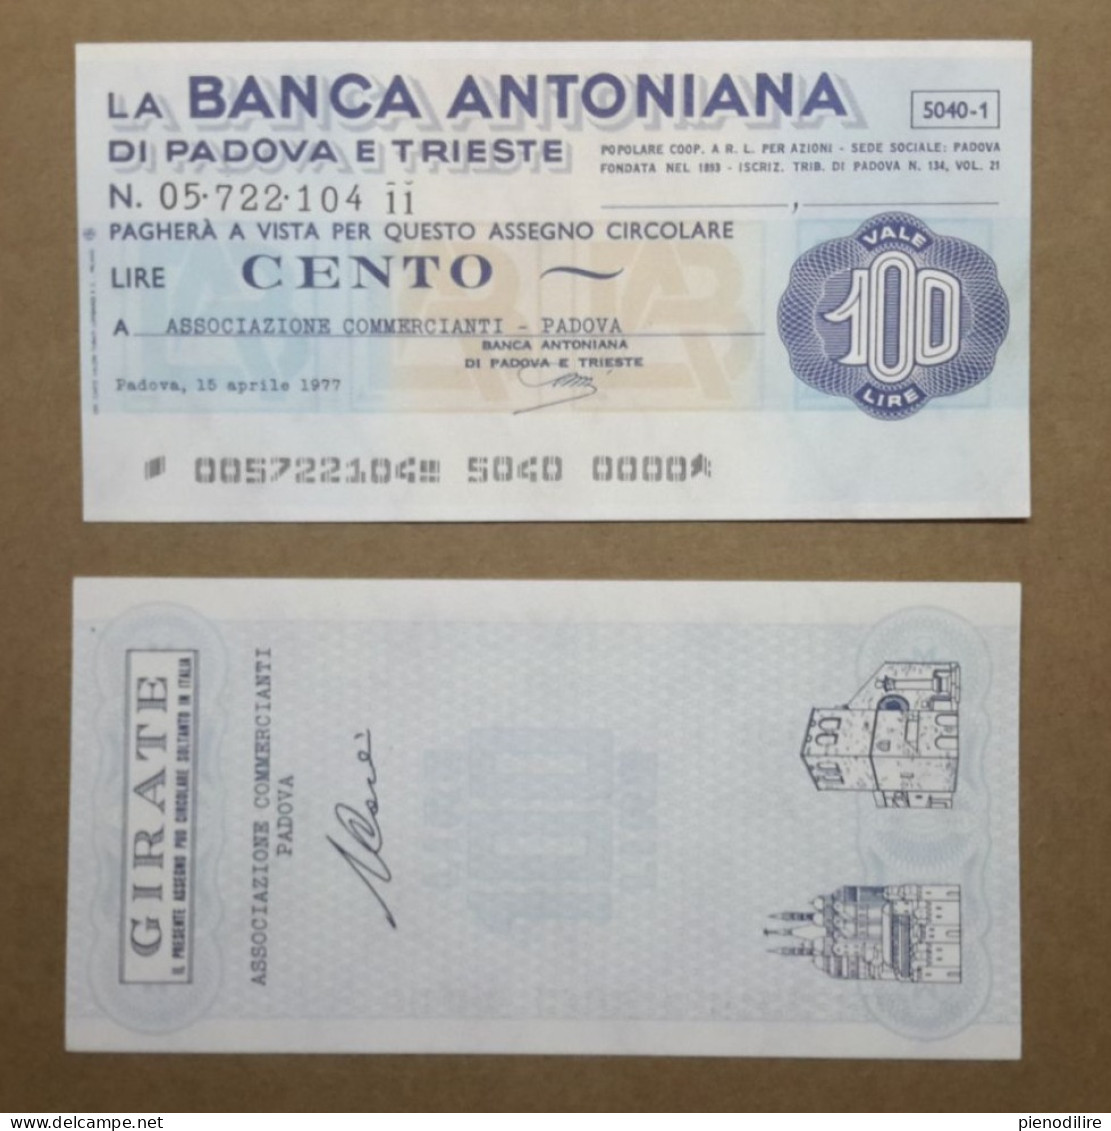 BANCA ANTONIANA DI PADOVA E TRIESTE, 100 Lire 15.04.1977 ASSOCIAZIONE COMMERCIANTI PADOVA (A1.68) - [10] Cheques Y Mini-cheques